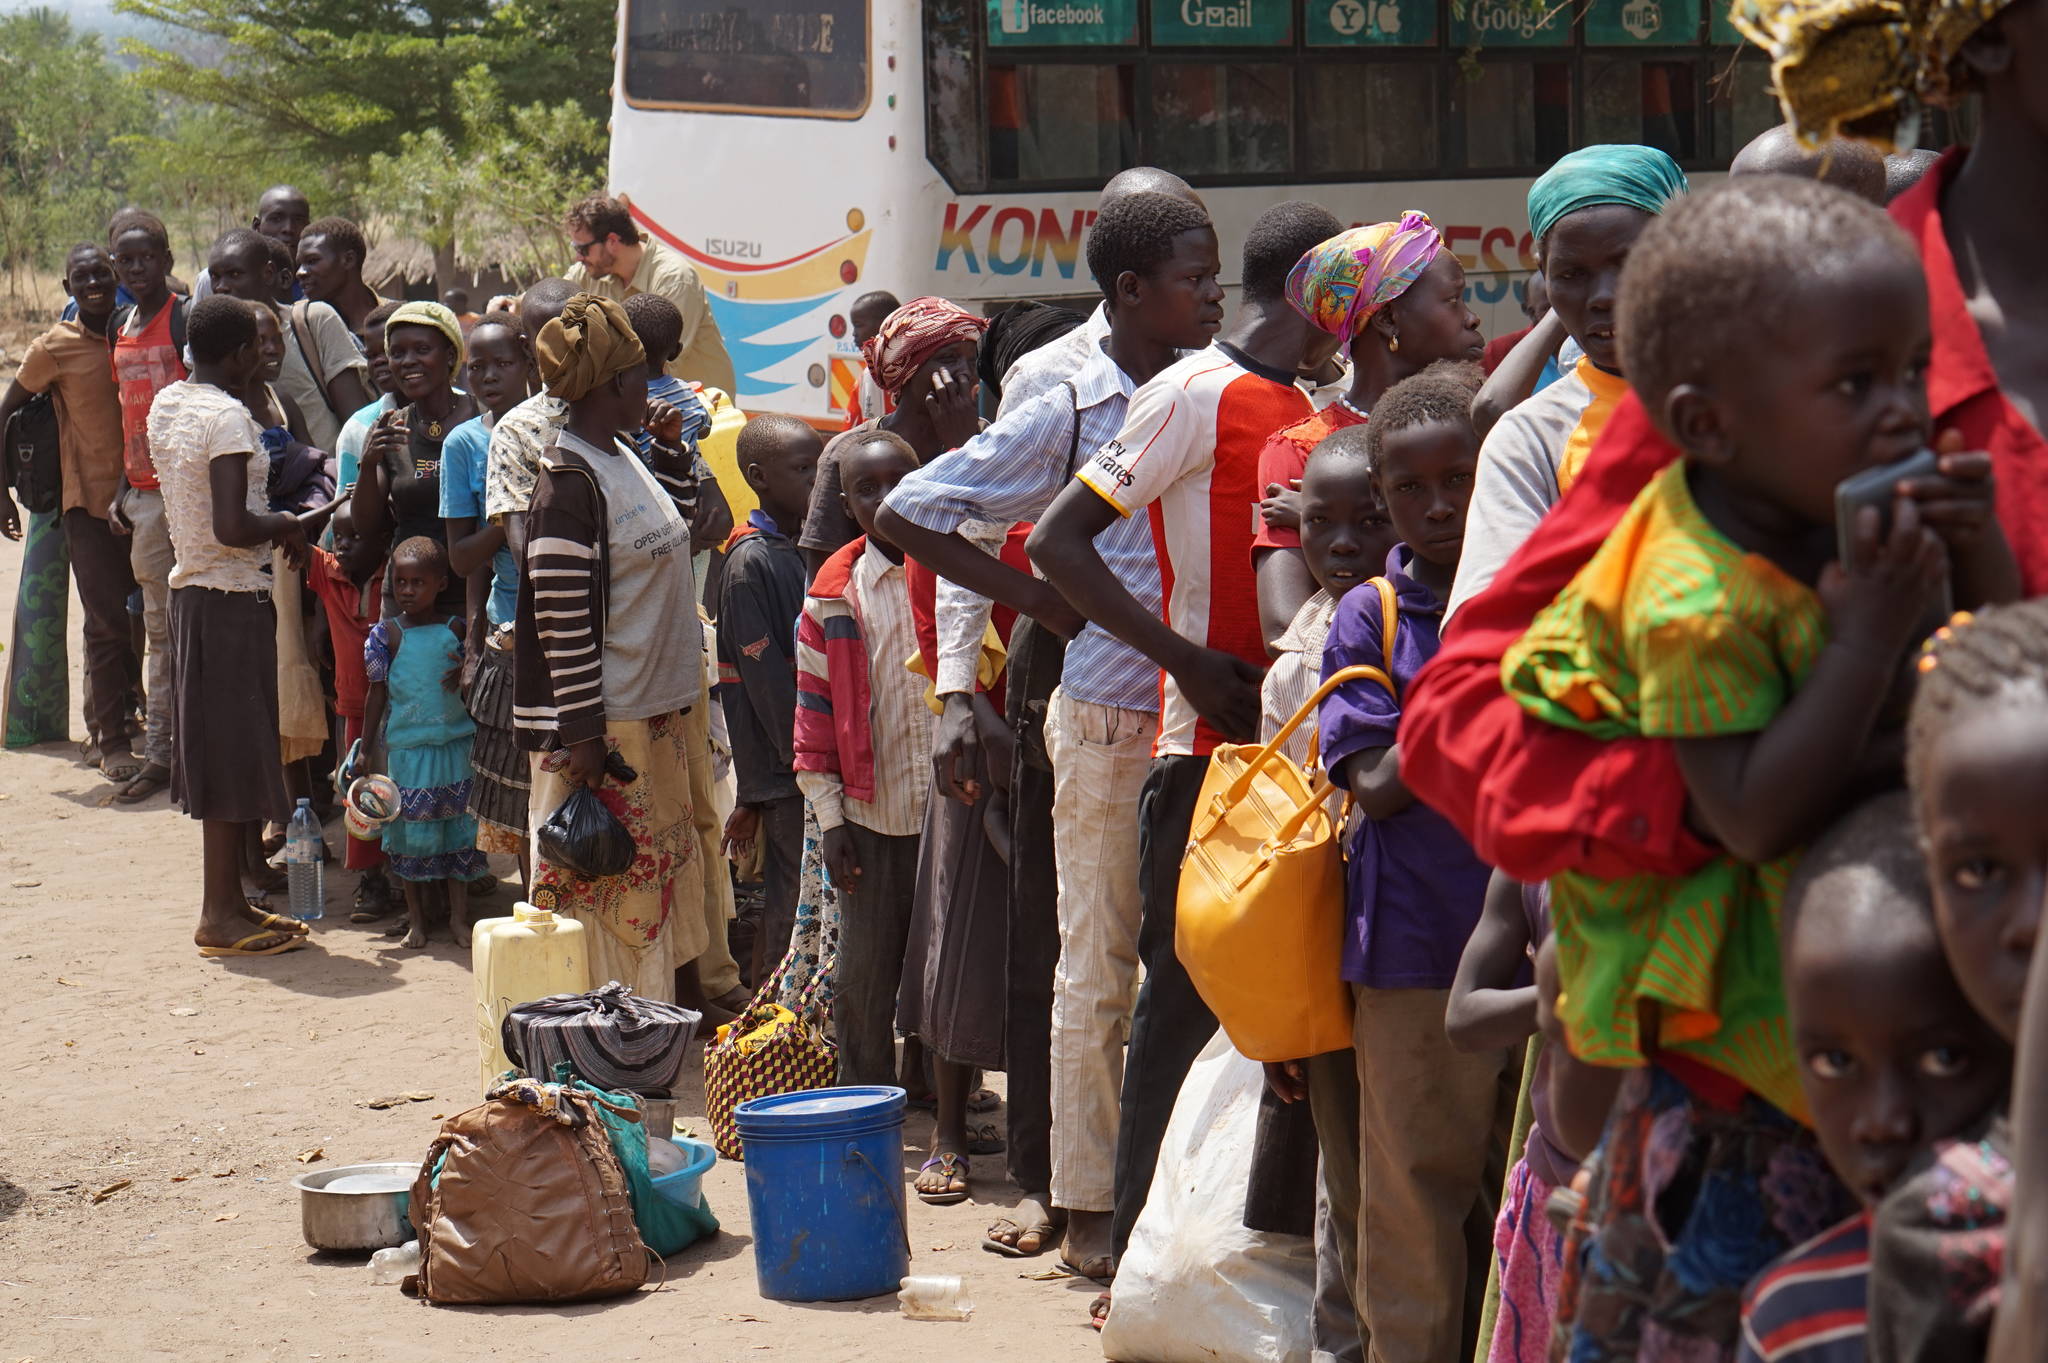 Medical Teams International provides health care for refugees in Uganda